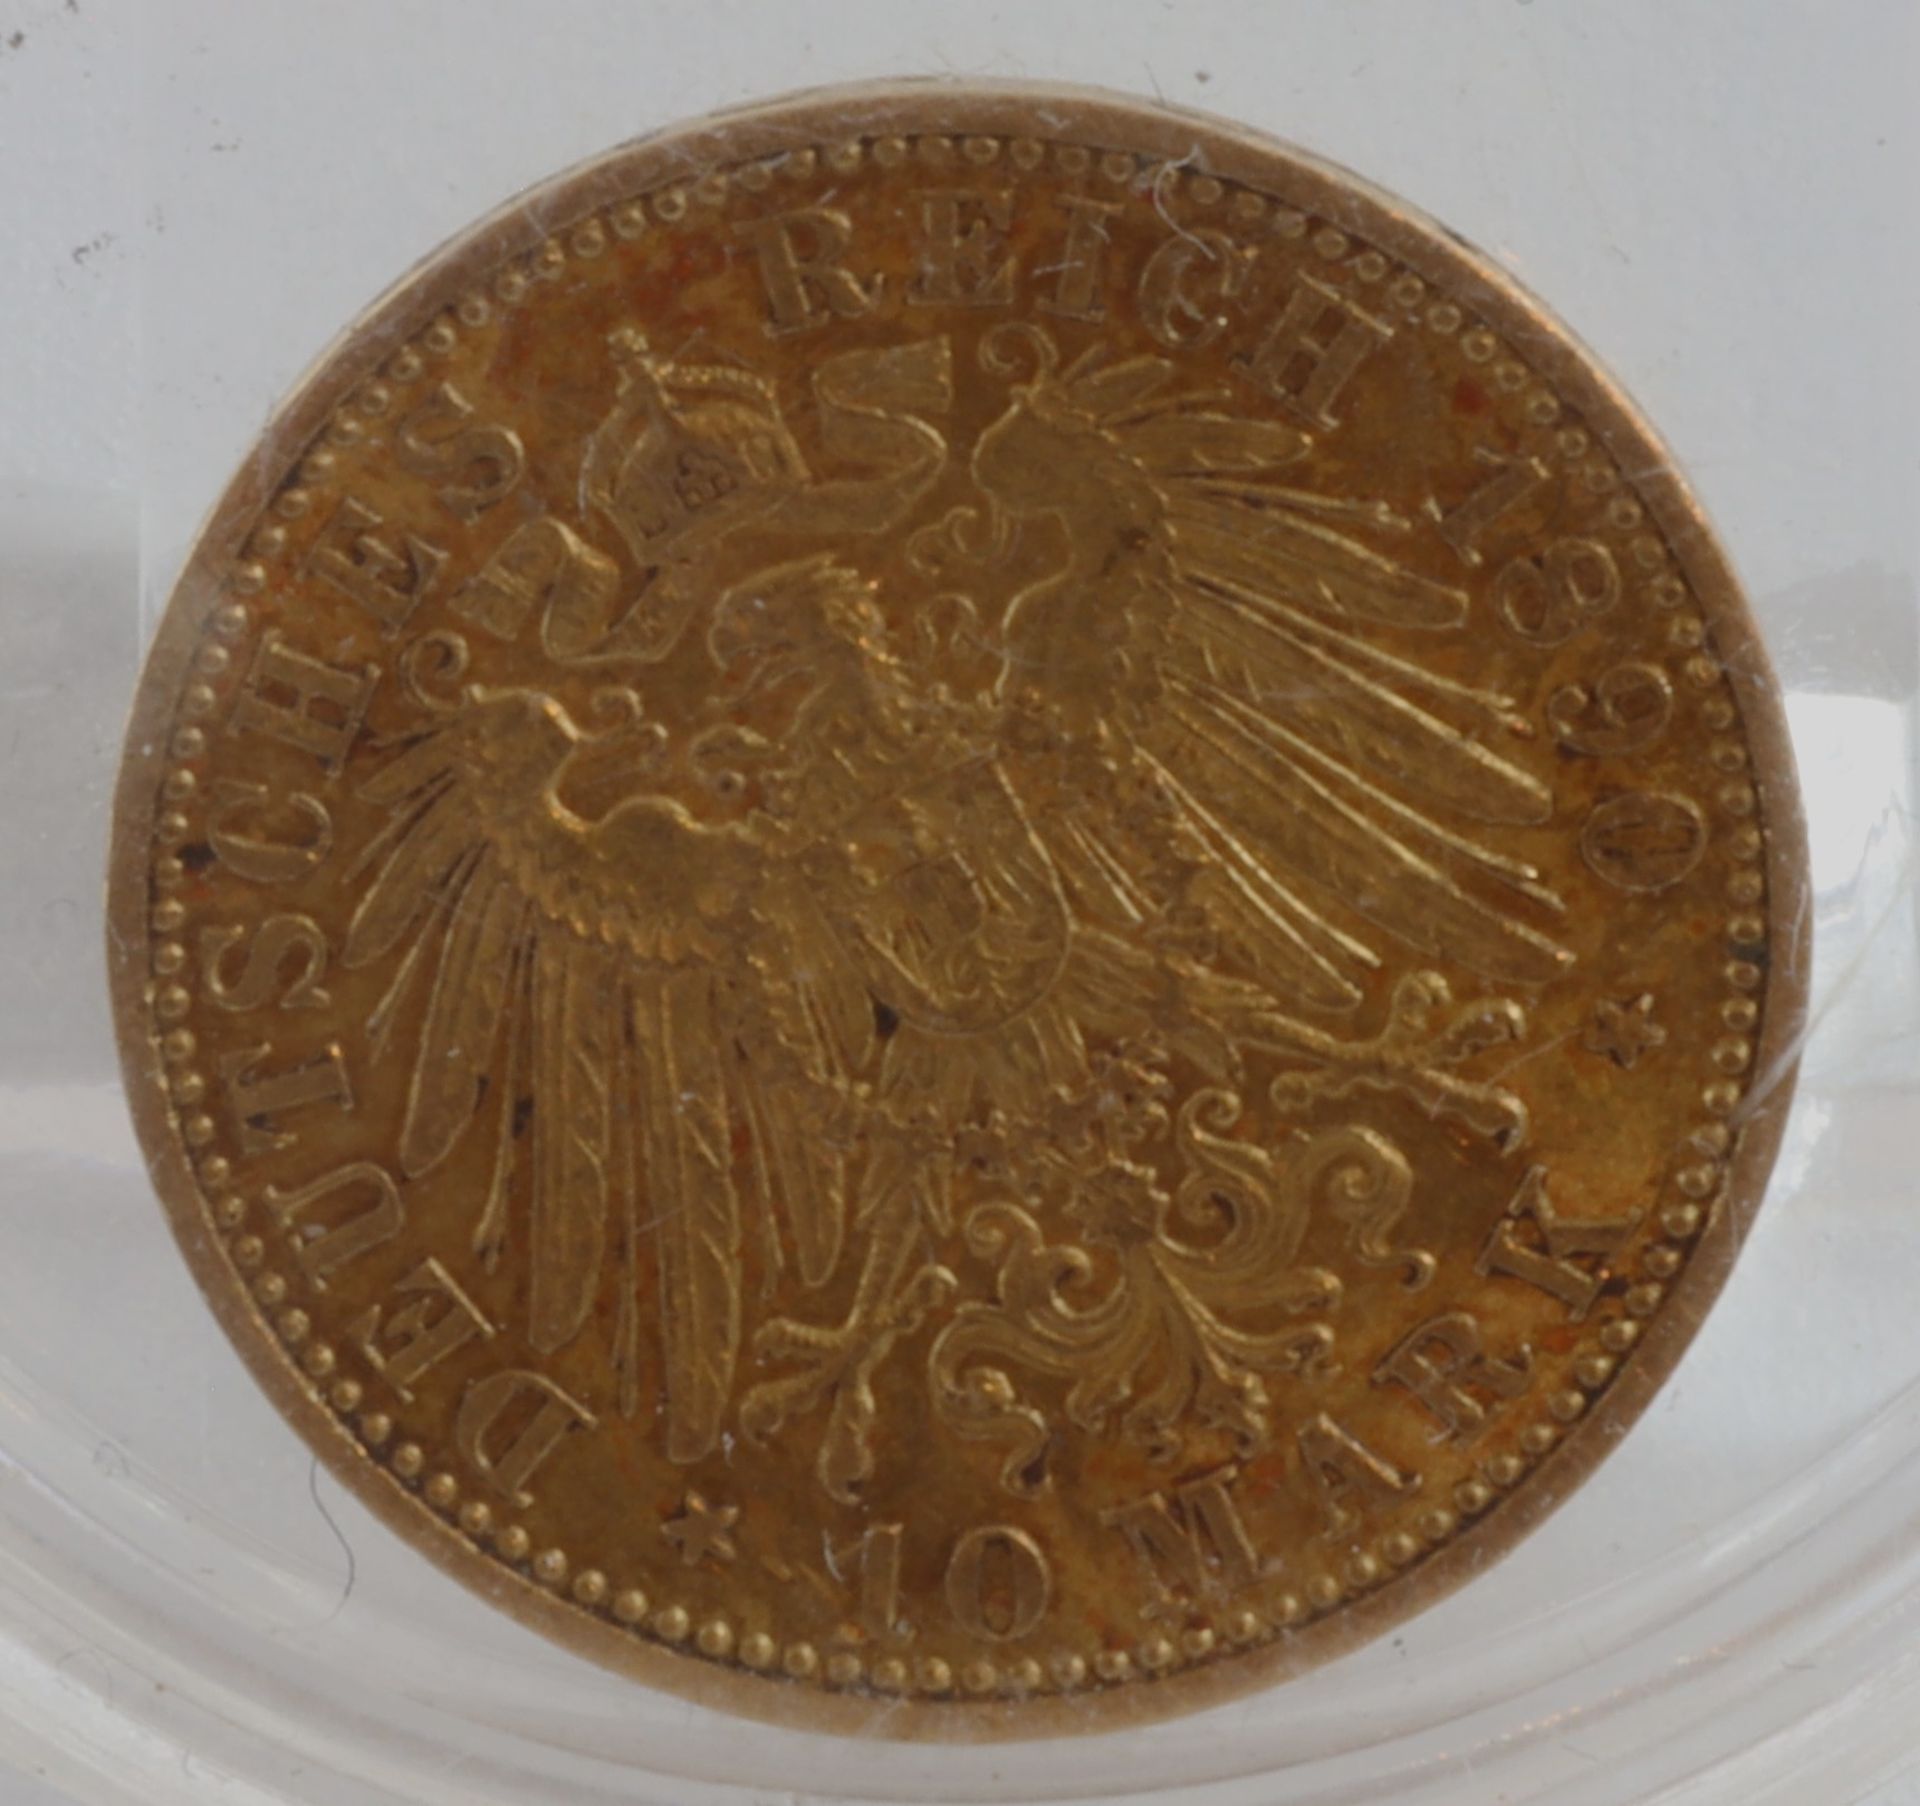 Gold coin 10 Mark German Reich, year 1890